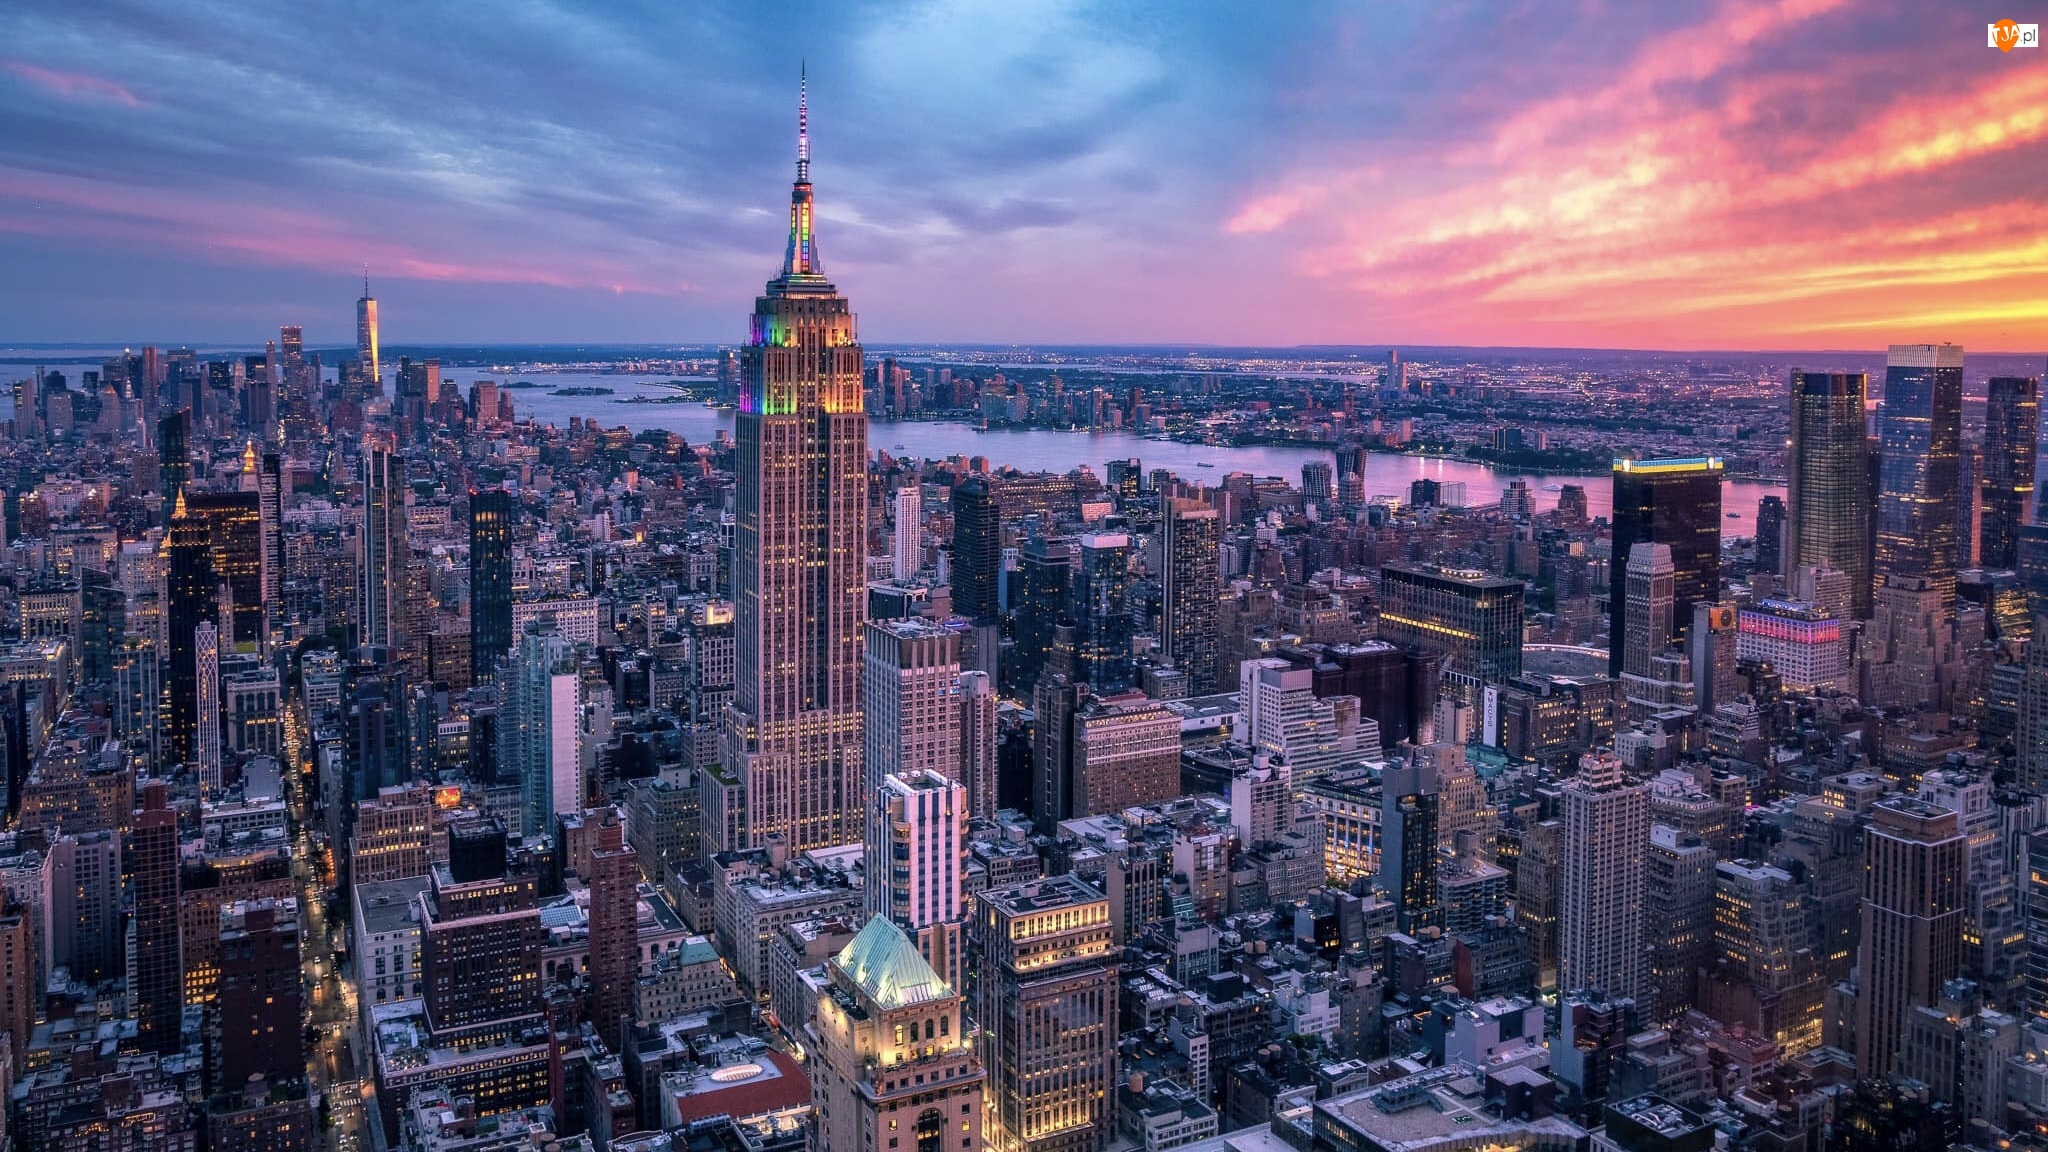 Nowy Jork, Wieżowce, Manhattan, Stany Zjednoczone, Hudson River, Rzeka, Empire State Building